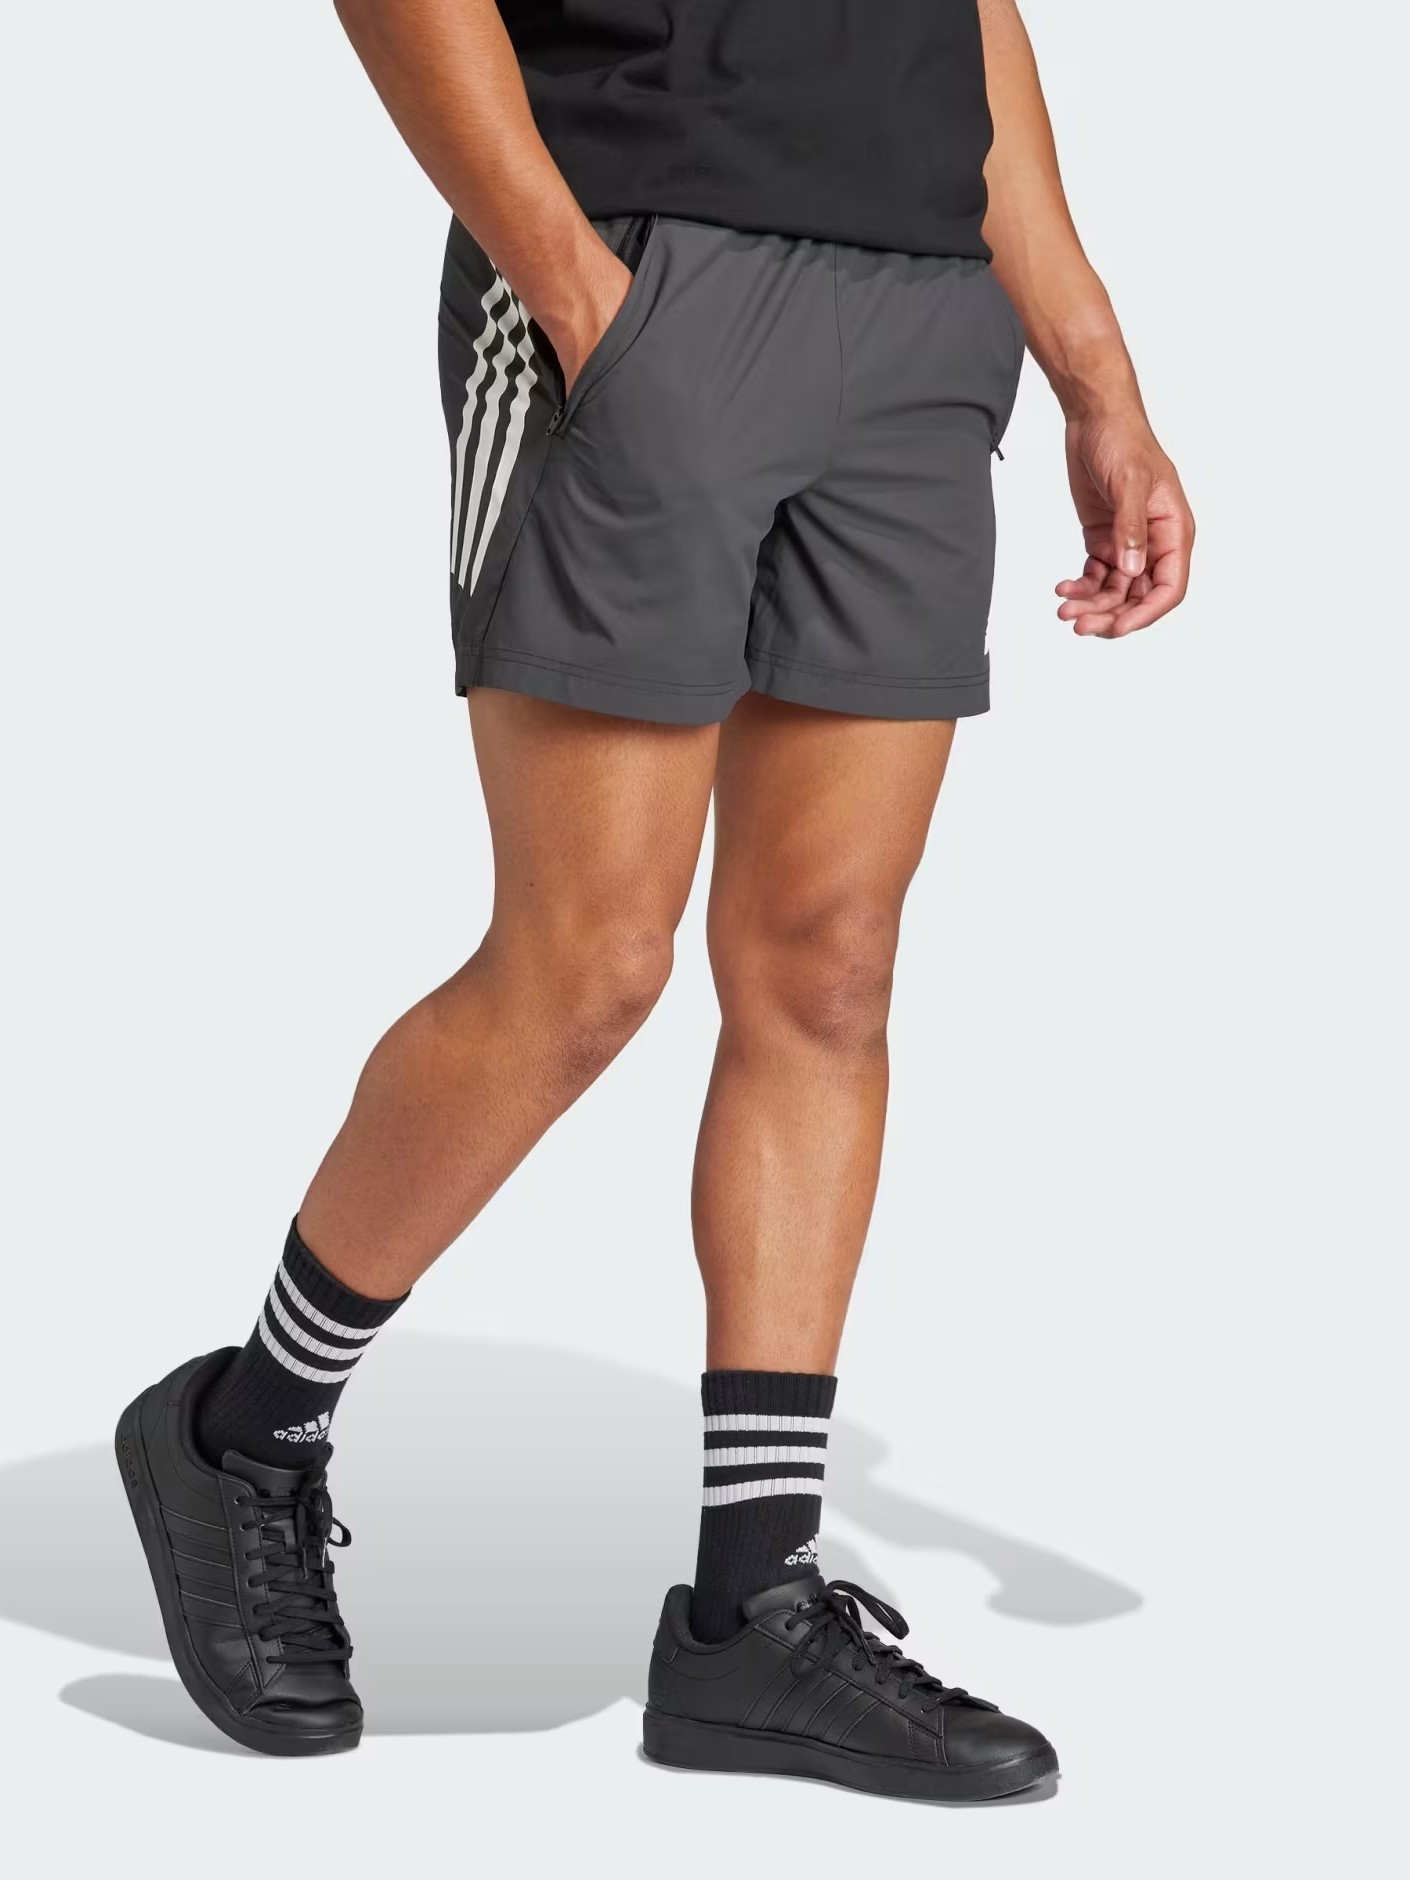 Шорты мужские Adidas M FI WV SHORT черные IR9221 изображение 3